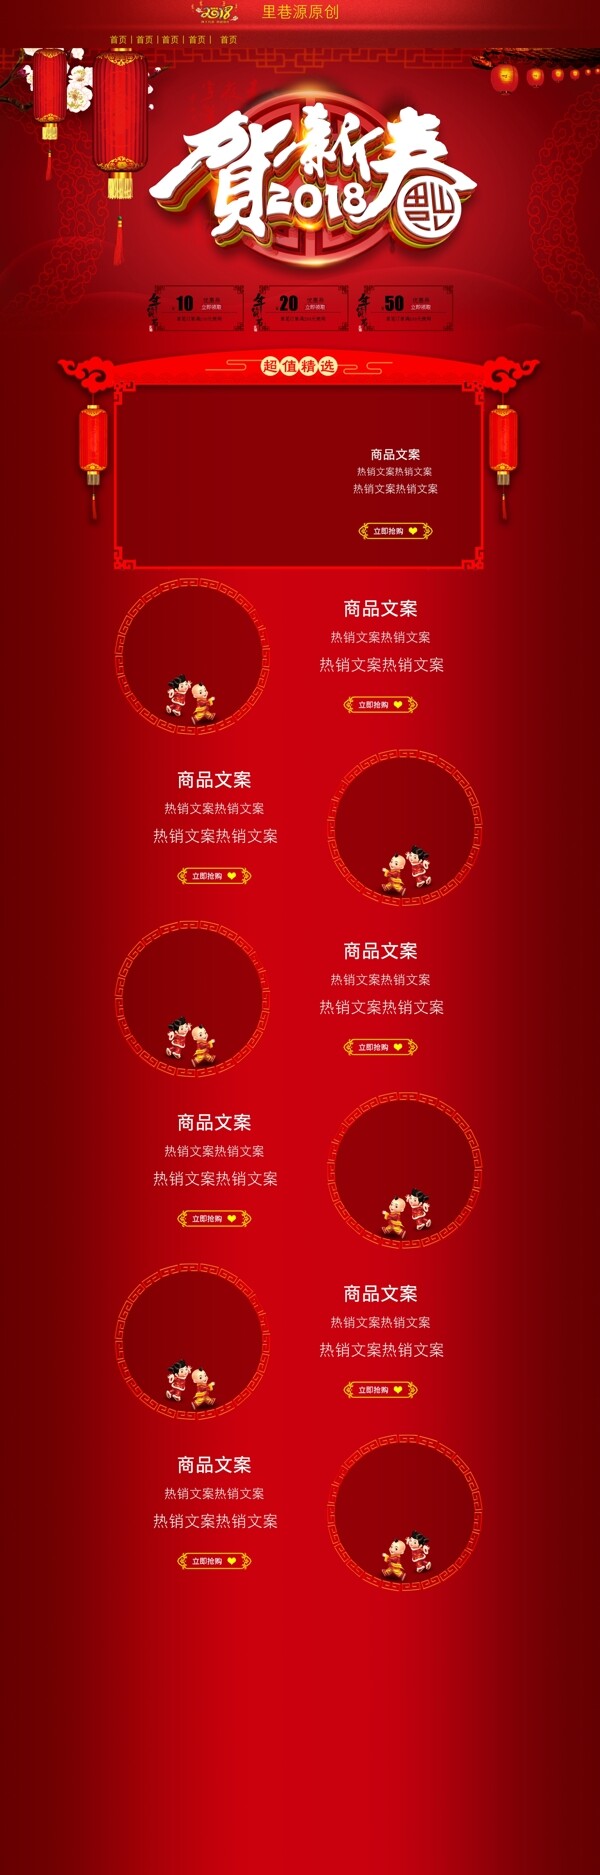 贺新春节日活动促销模板